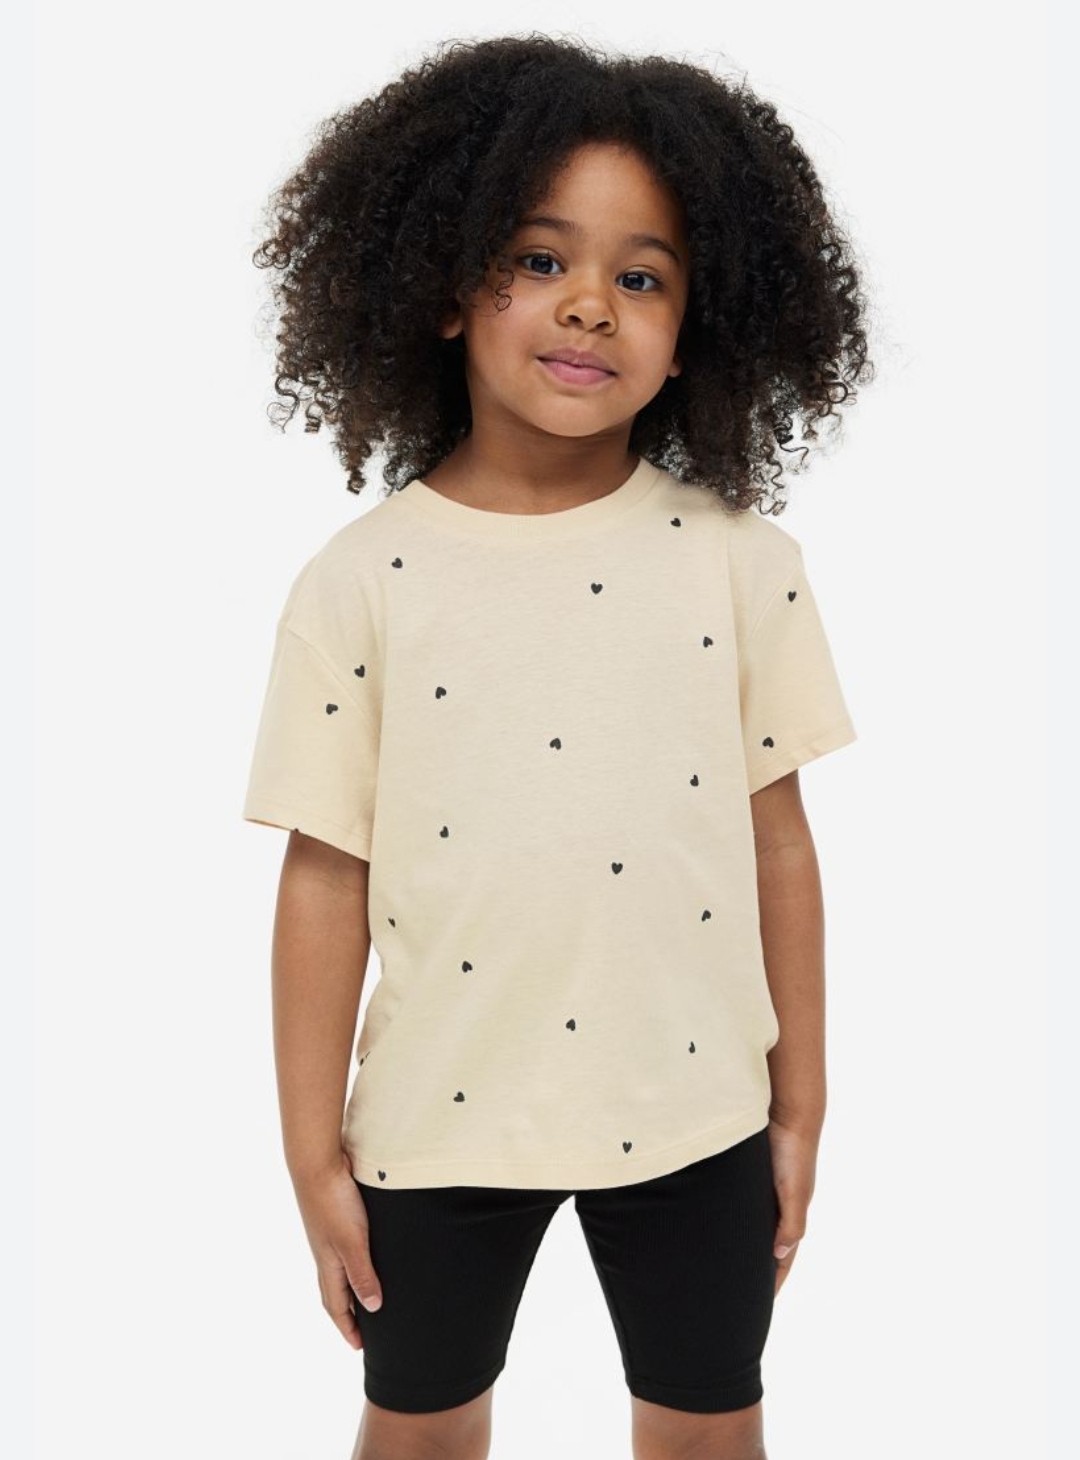 تی شرت دخترانه 22505 سایز 1.5 تا 12 سال کد 1 مارک H&M